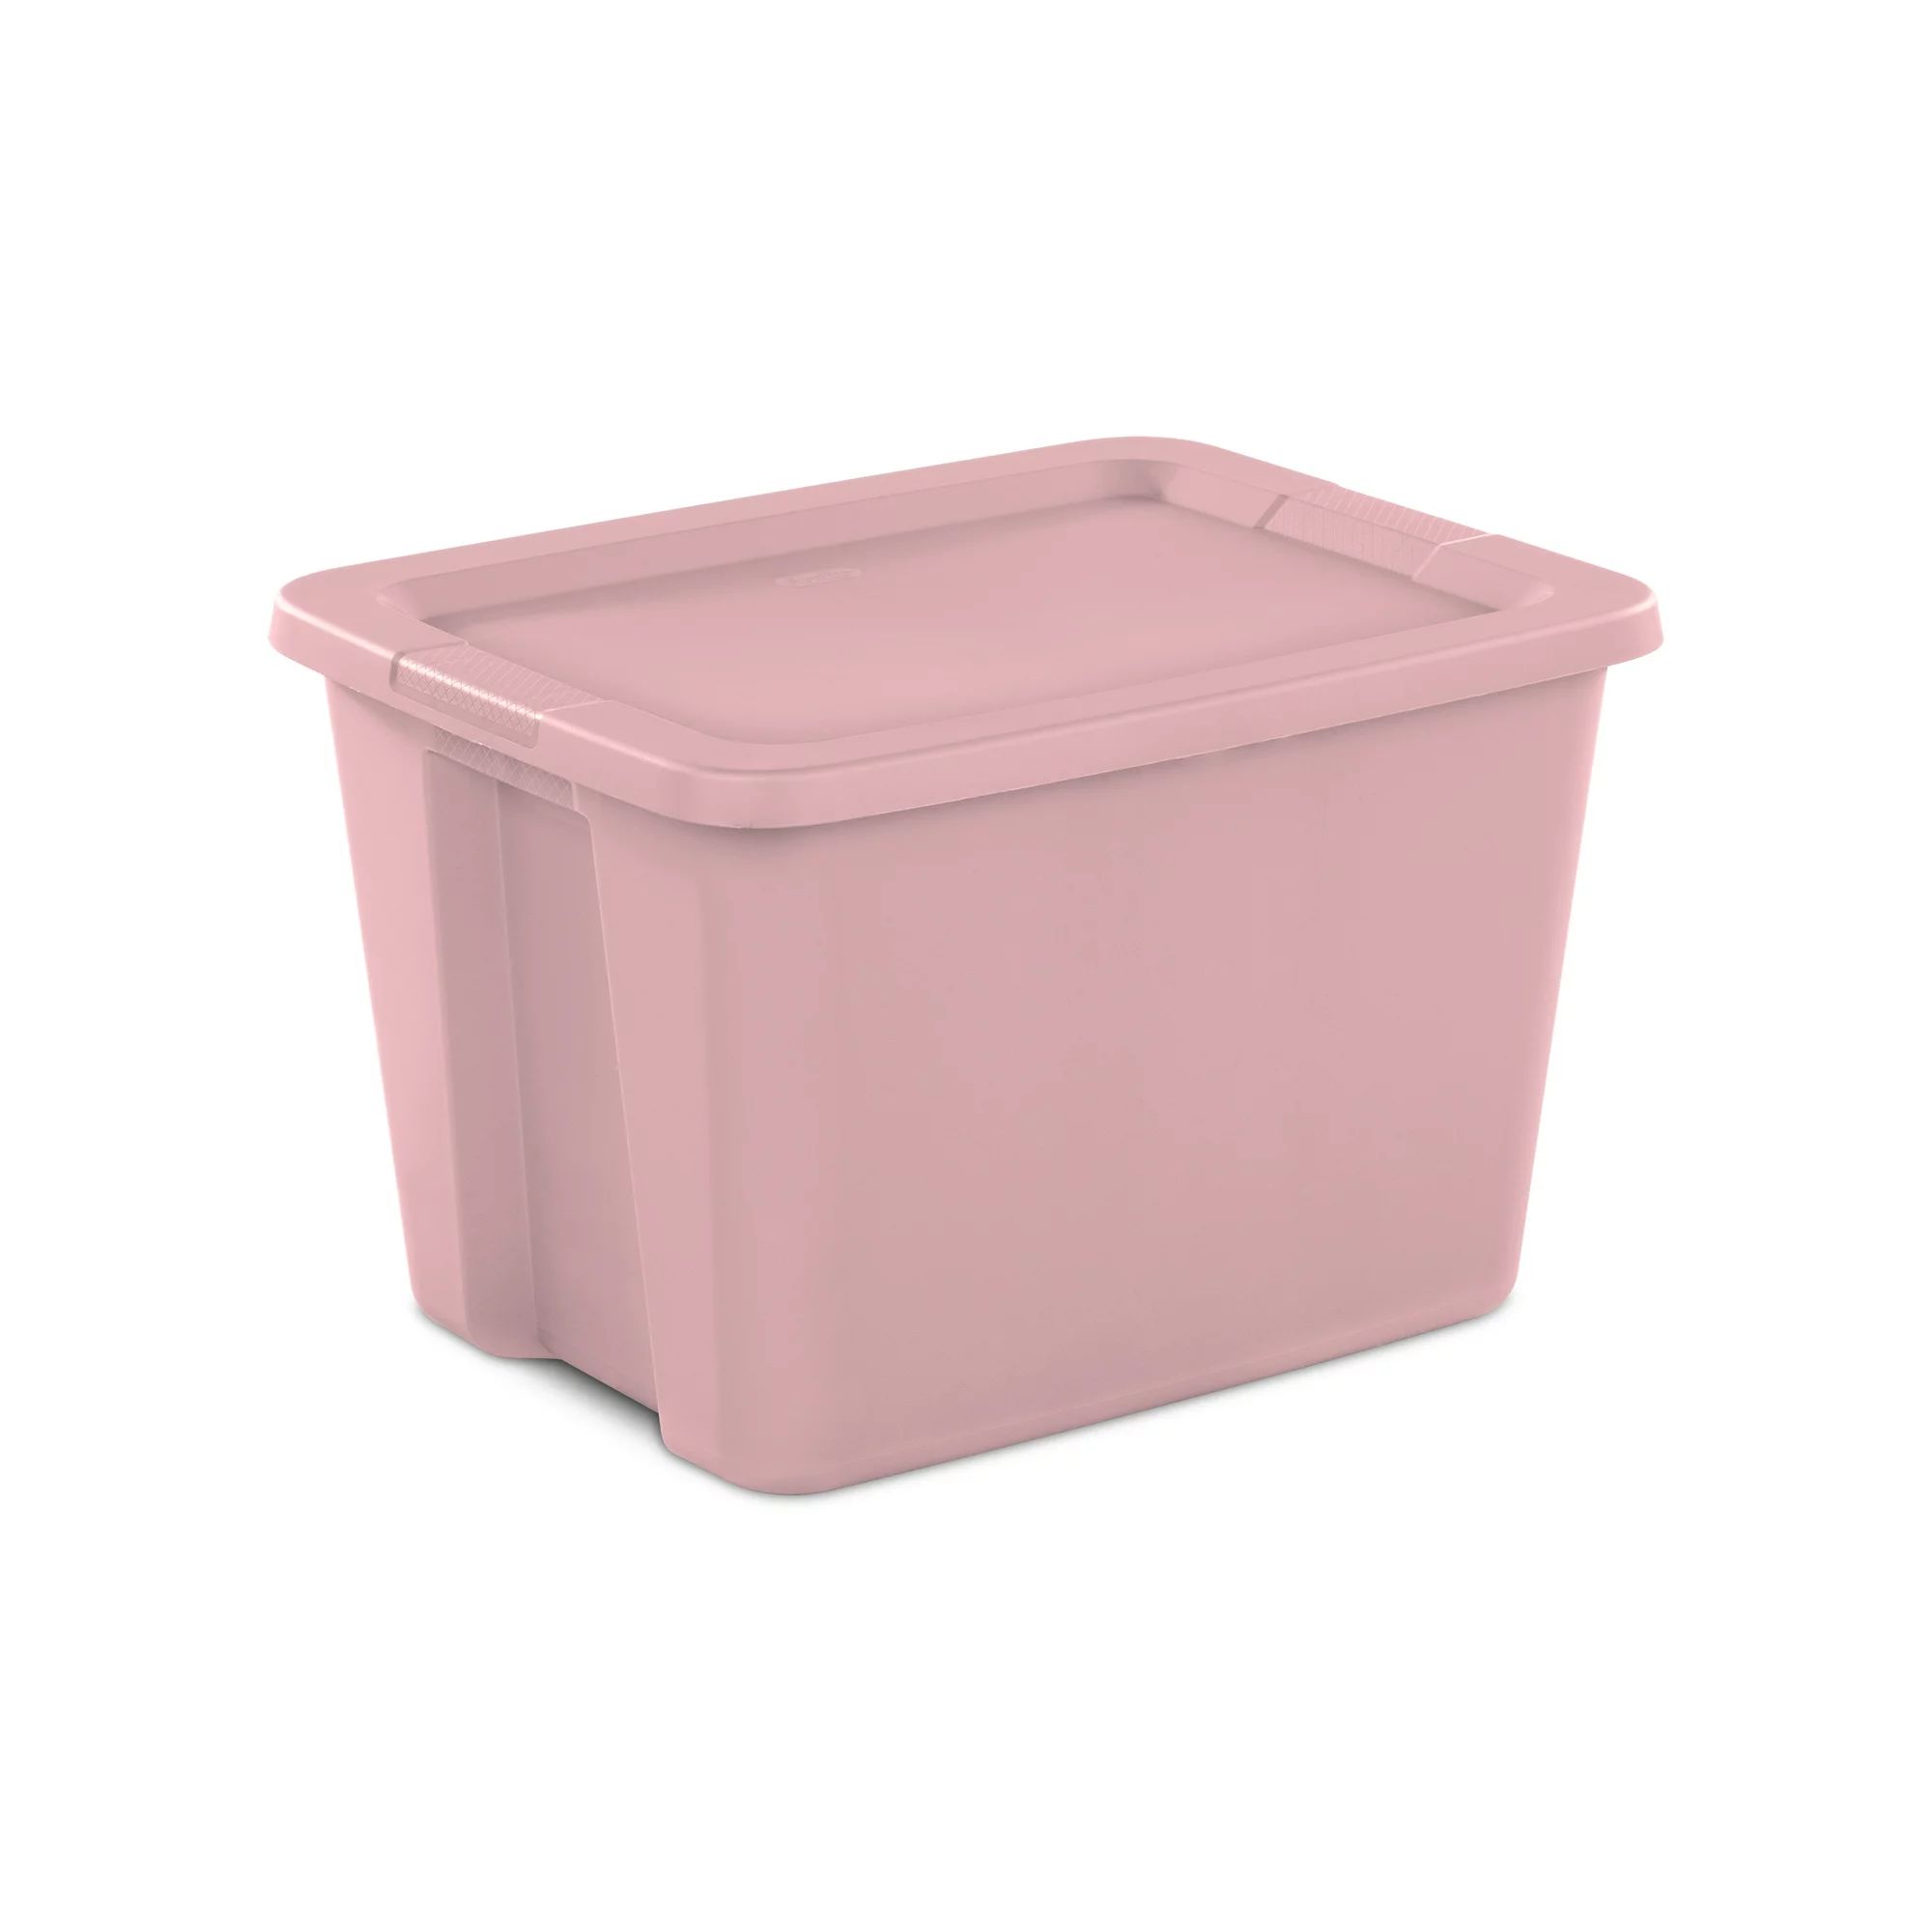 Sterilite 18 Gallon Tote Box Plastic, Blush Pink | Walmart (US)